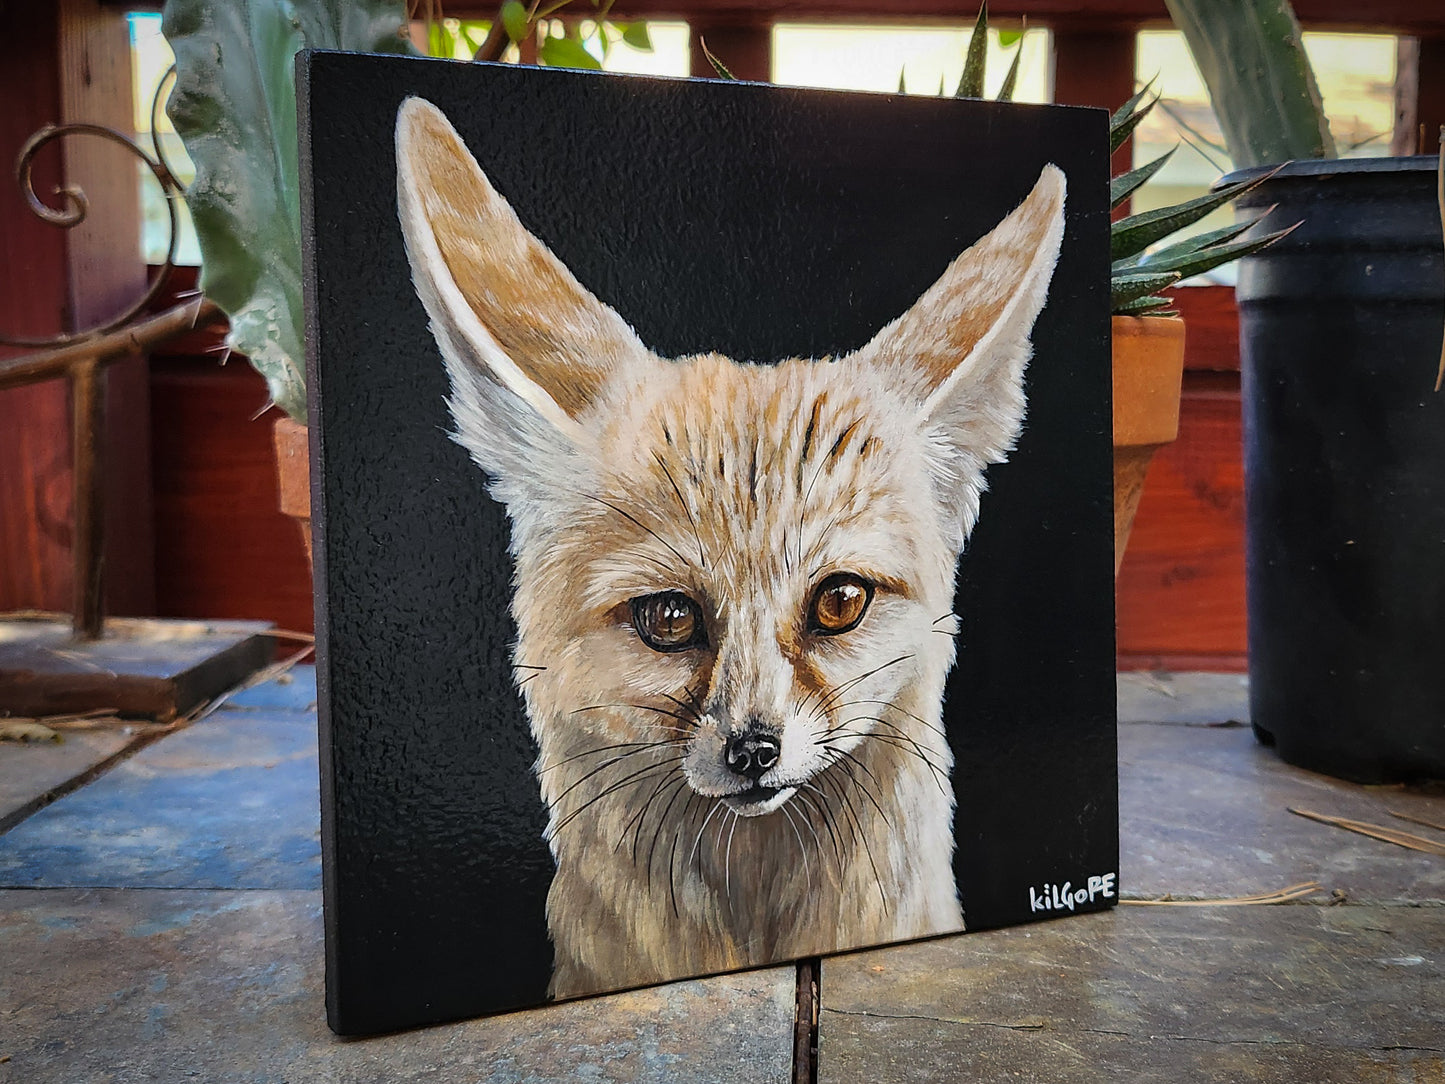 Fennec Fox - Original Acrylic Painting - By Kilgore, Original 7" x 7" Acrylic Painting on Wood